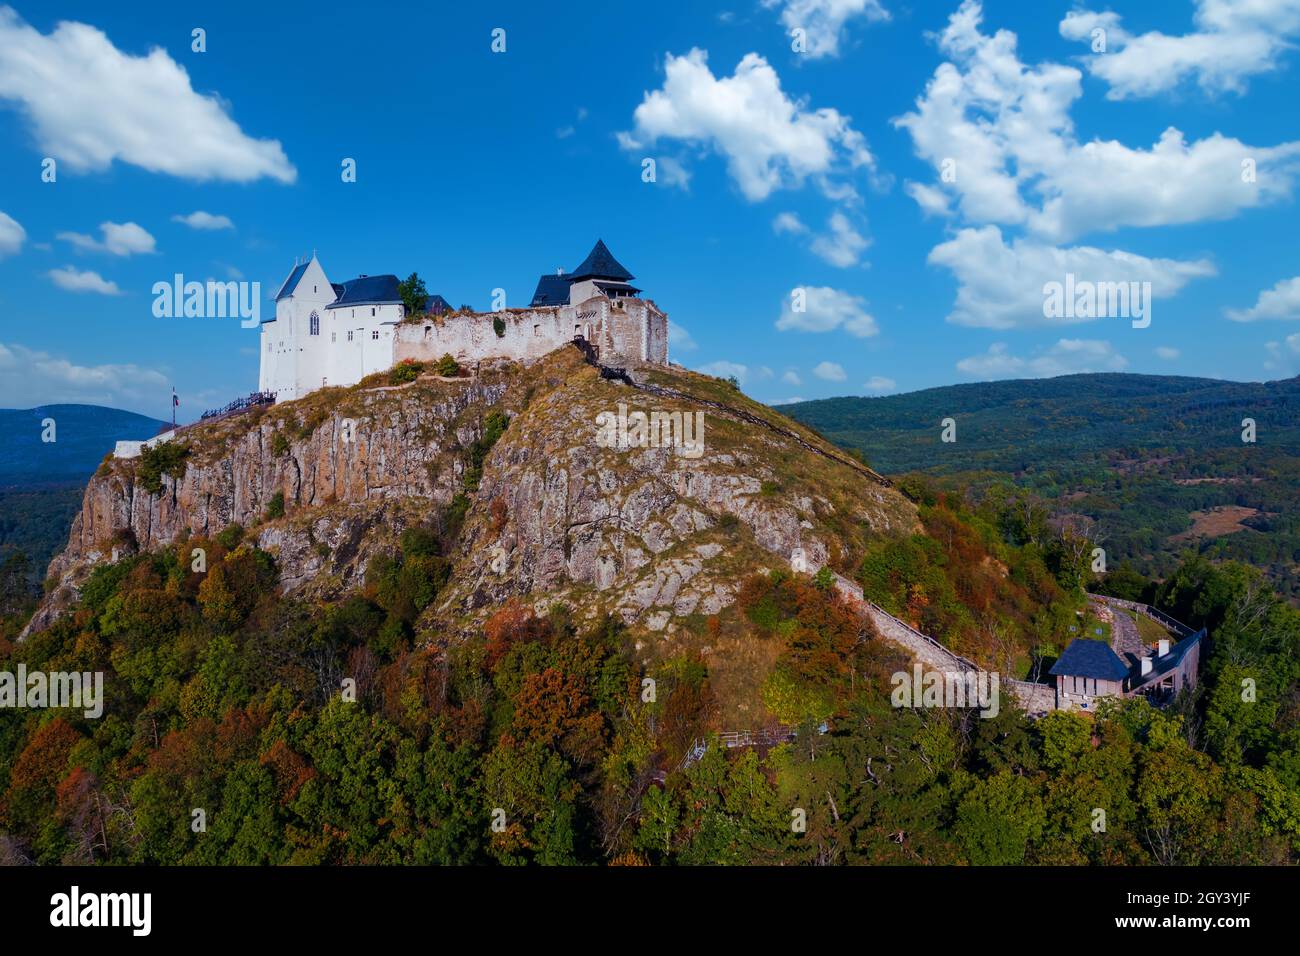 Füzér, Ungheria - veduta aerea del famoso castello di Fuzer costruito su una collina vulcanica chiamata Nagy-Milic. Zemplen montagne sullo sfondo. Terra d'inverno Foto Stock